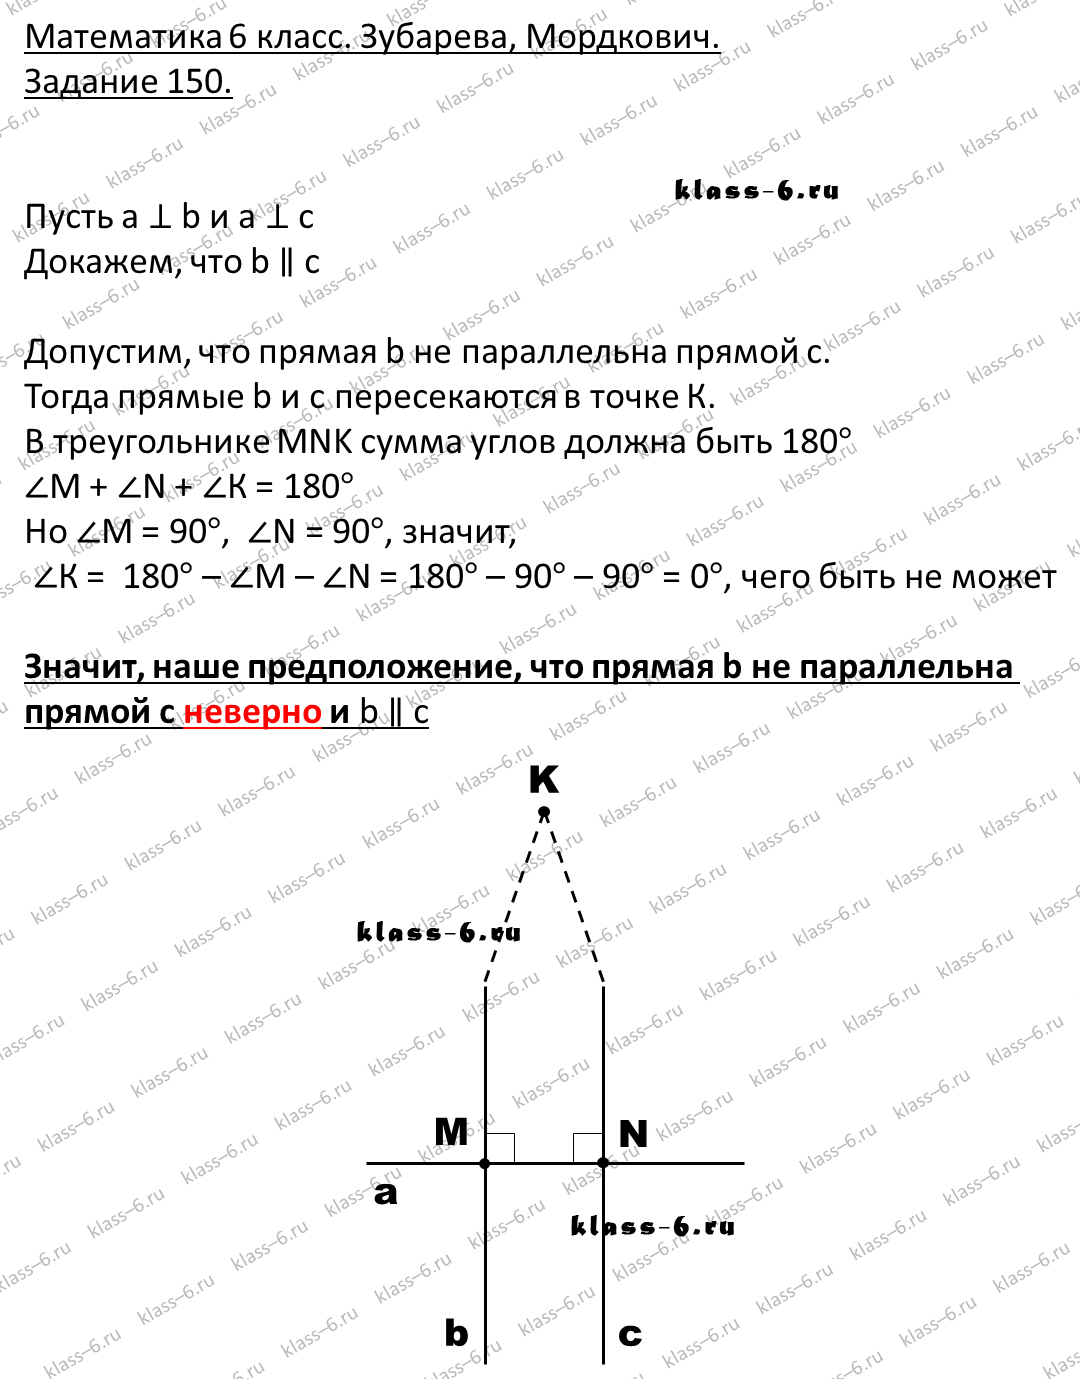 гдз математика Зубарева 6 класс ответ и подробное решение с объяснениями задачи 150